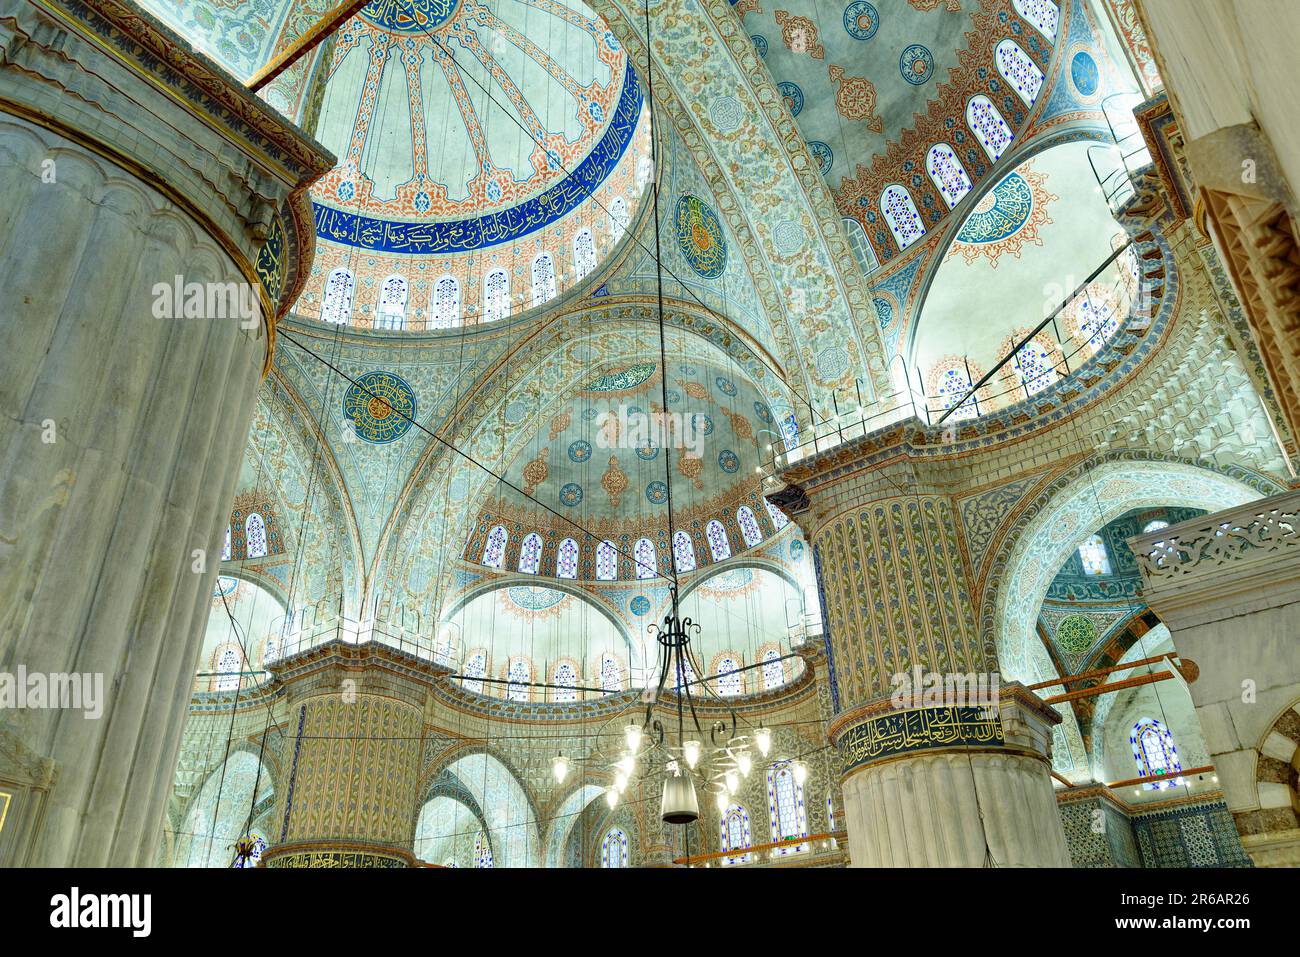 Innenansicht der berühmten Blauen Moschee oder Sultan-Ahmet-Moschee in Istanbul mit Kuppeln und Kuppeln und islamischen Kunstdekorationen Stockfoto